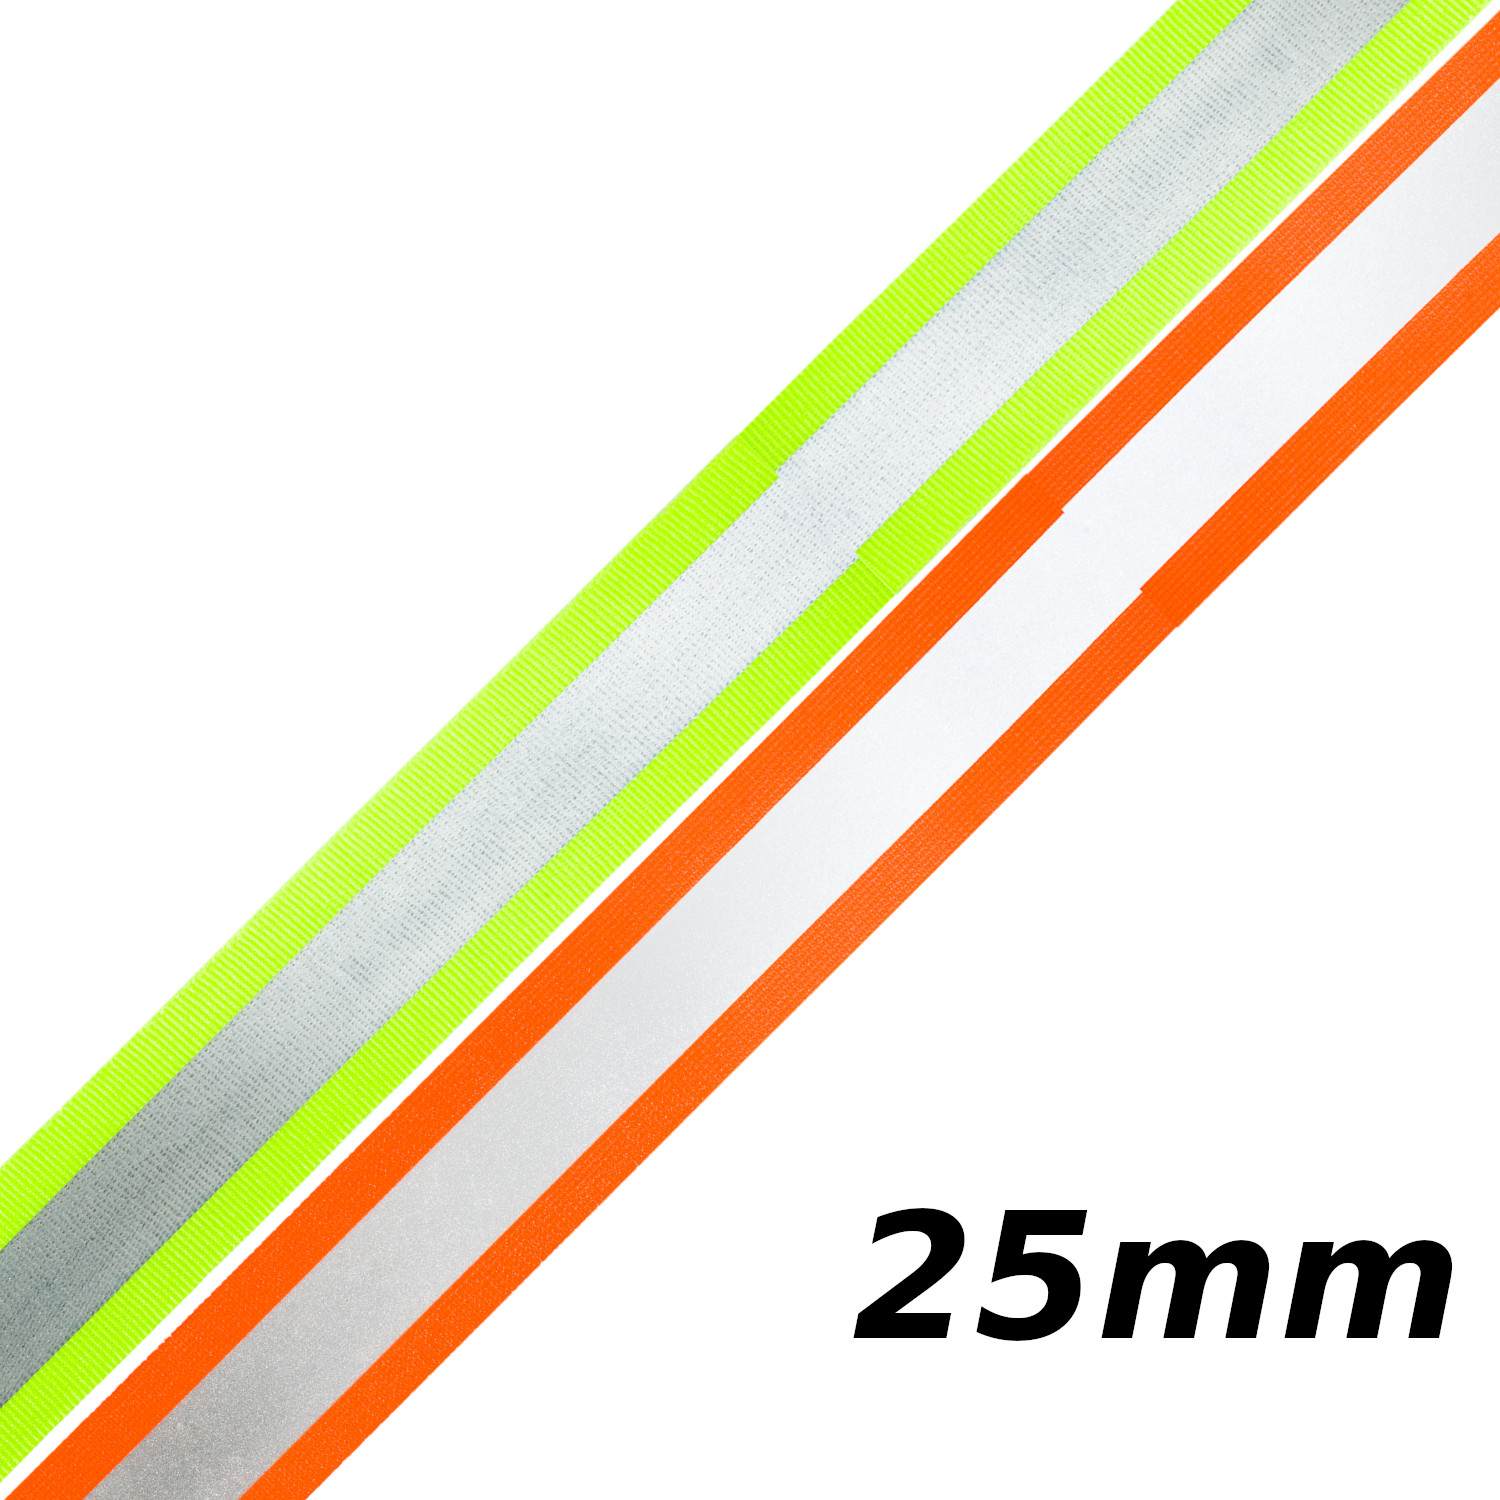 Reflektorband 25mm breit in 3 Farben